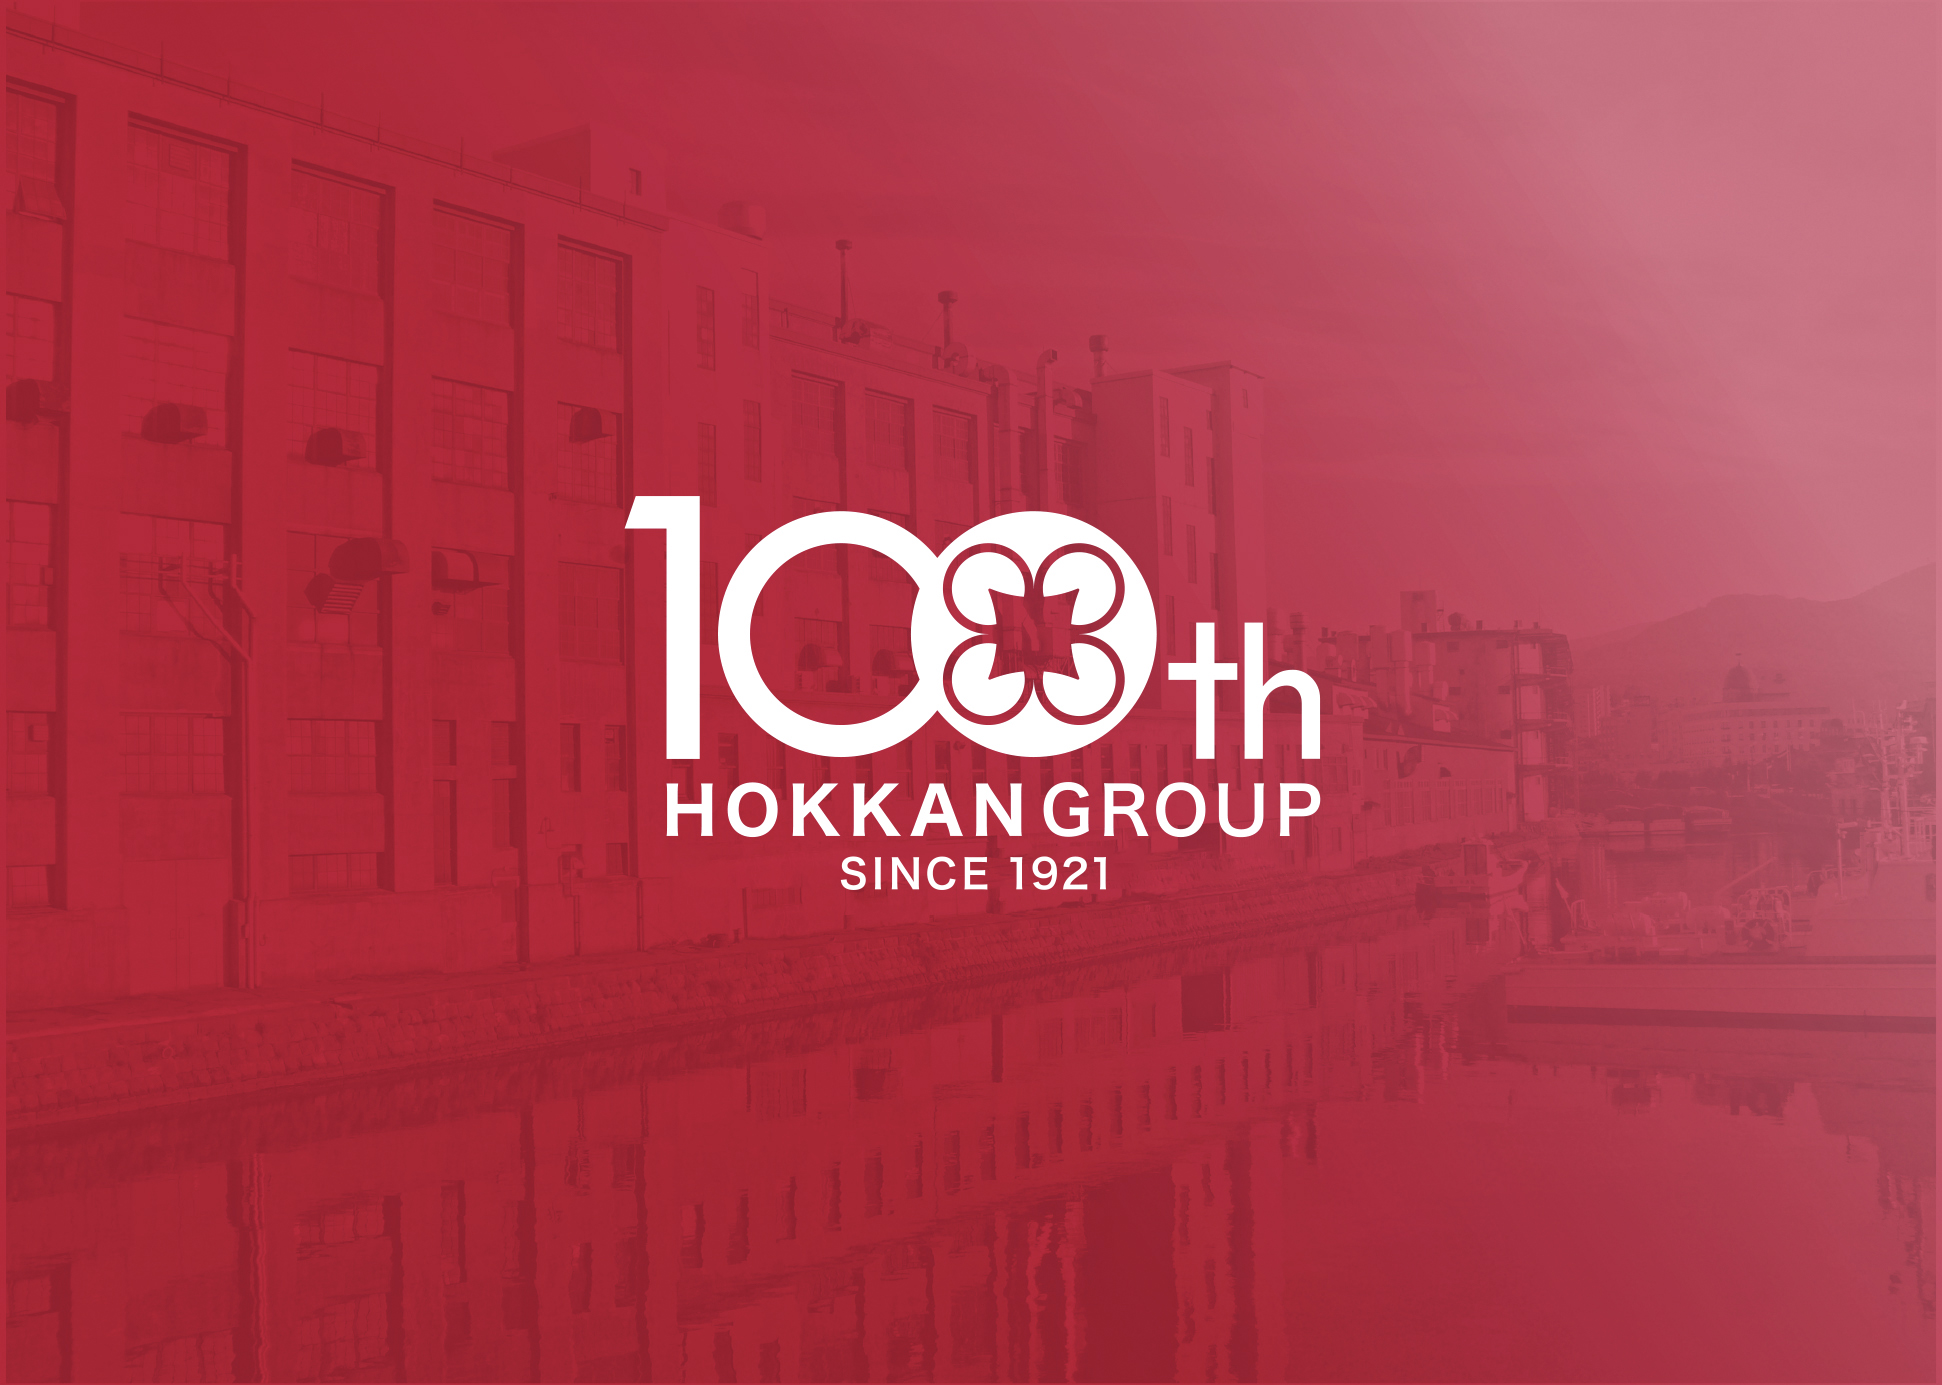 私たちホッカングループは、創業100周年を迎えました。